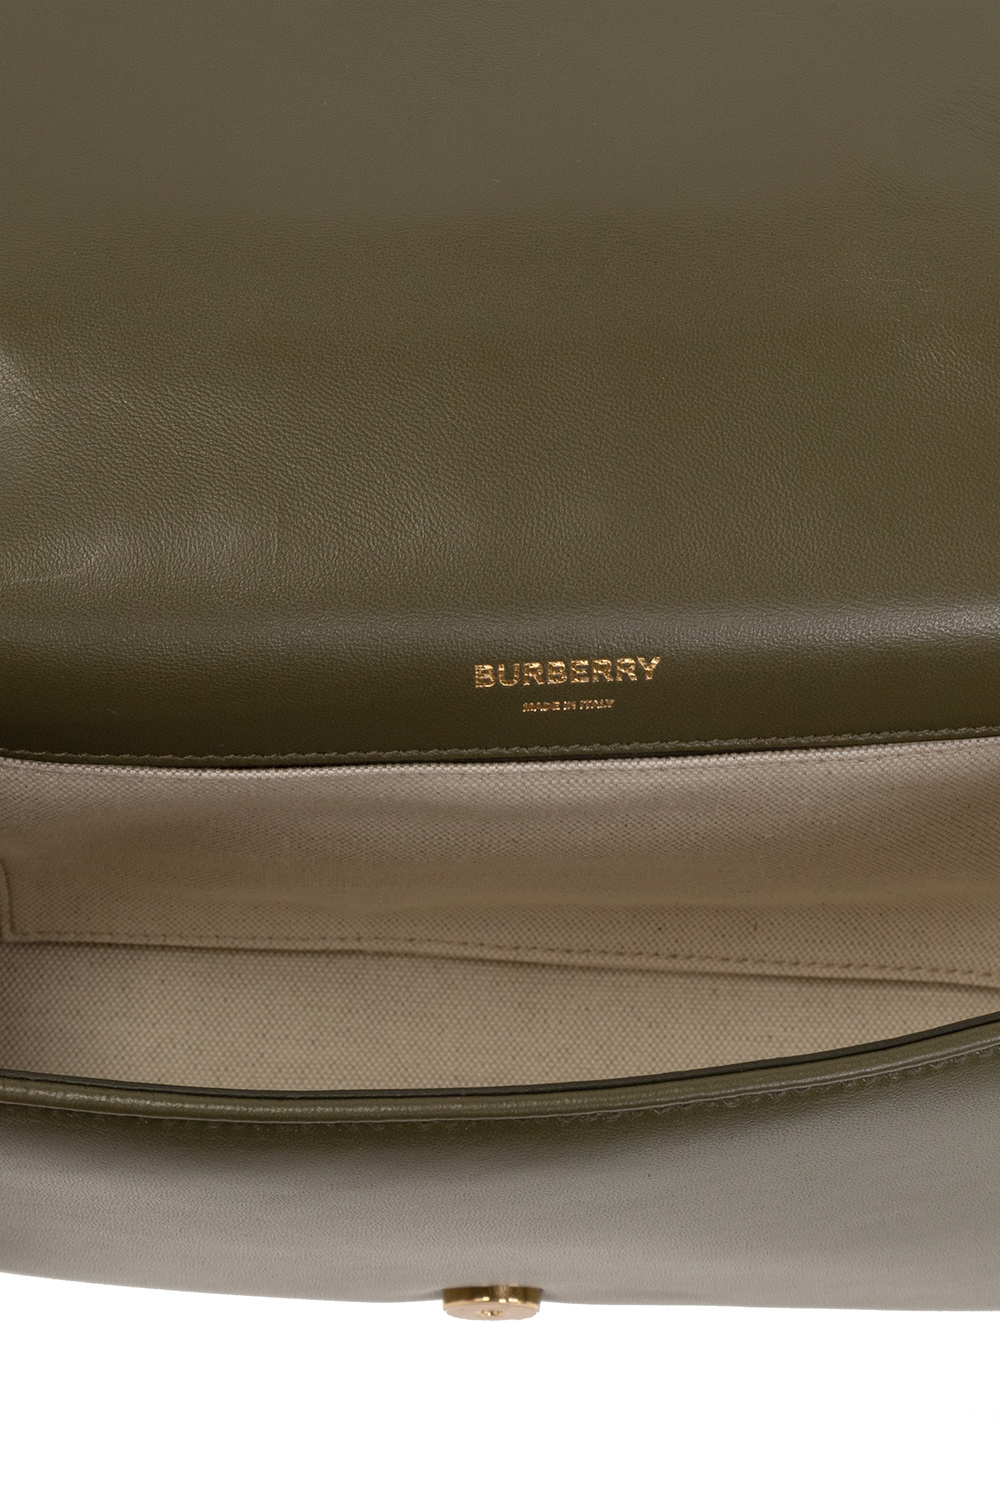 Burberry ‘Lola’ shoulder bag